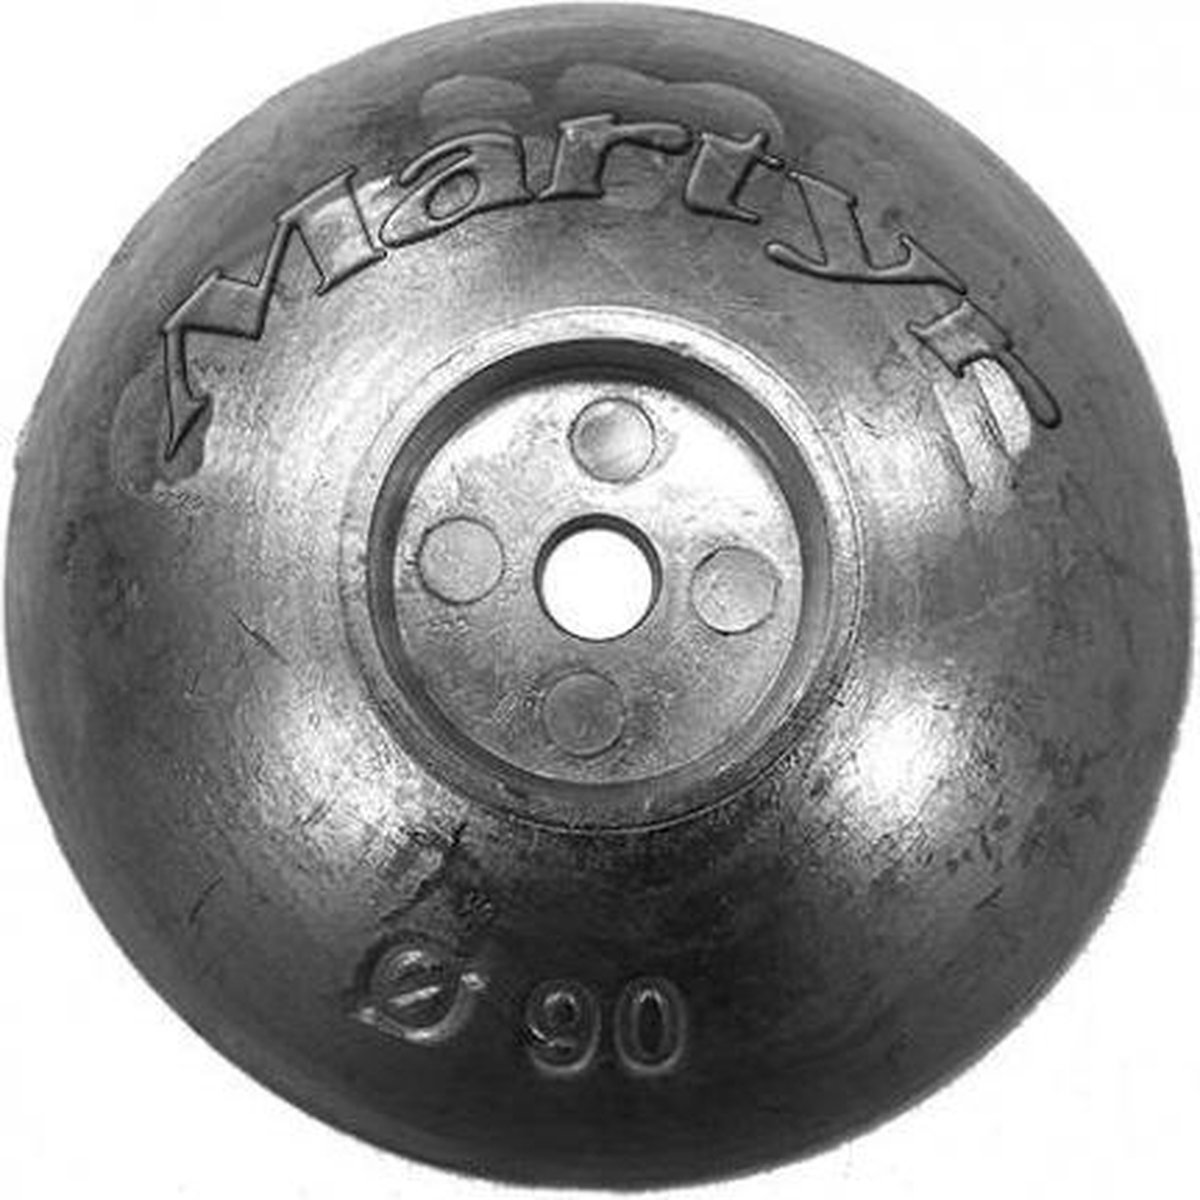 Trimvlak anode van zink diameter 70 mm (CMF70) - Martyr